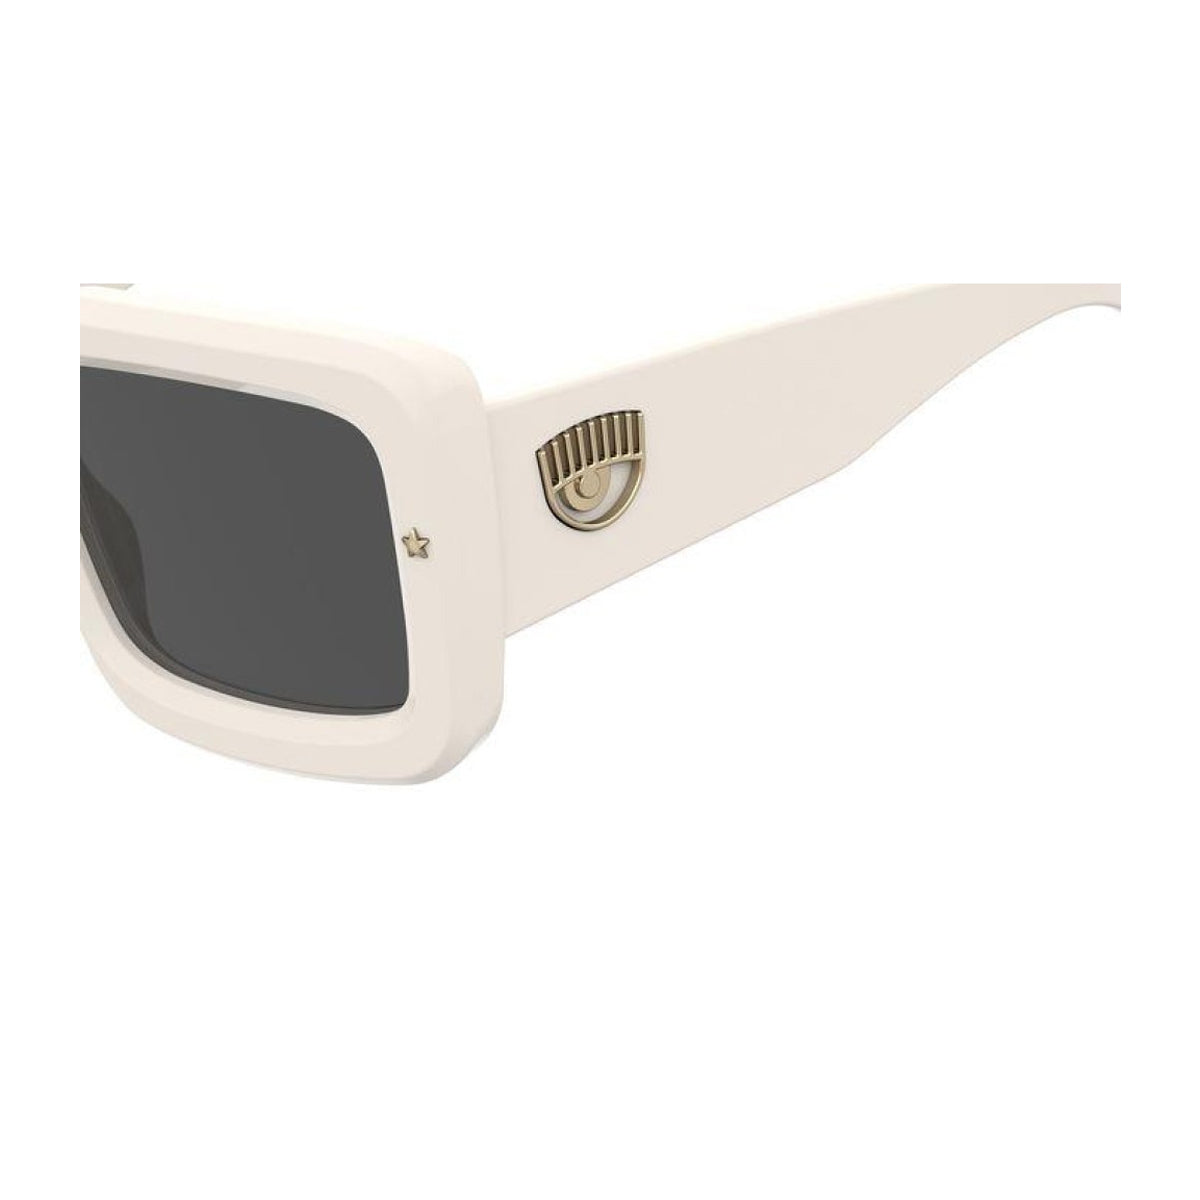 Cf 7022/s VK6/IR-Occhiali da sole-Chiara Ferragni-La collezione di occhiali di Chiara Ferragni rappresenta un'armoniosa fusione di stile e creatività. Questi occhiali, ideati dalla celebre influencer, sono curati nei minimi dettagli e caratterizzati da un design cool, chic e all'avanguardia. Il modello BOSSY EYE audace e appariscente presenta una forma squadrata con l'iconico logo eyelike inciso sull'asta e una delicata stella sul frontale. La lavorazione ad effetto 3D dei bordi della montatura enfatizza la